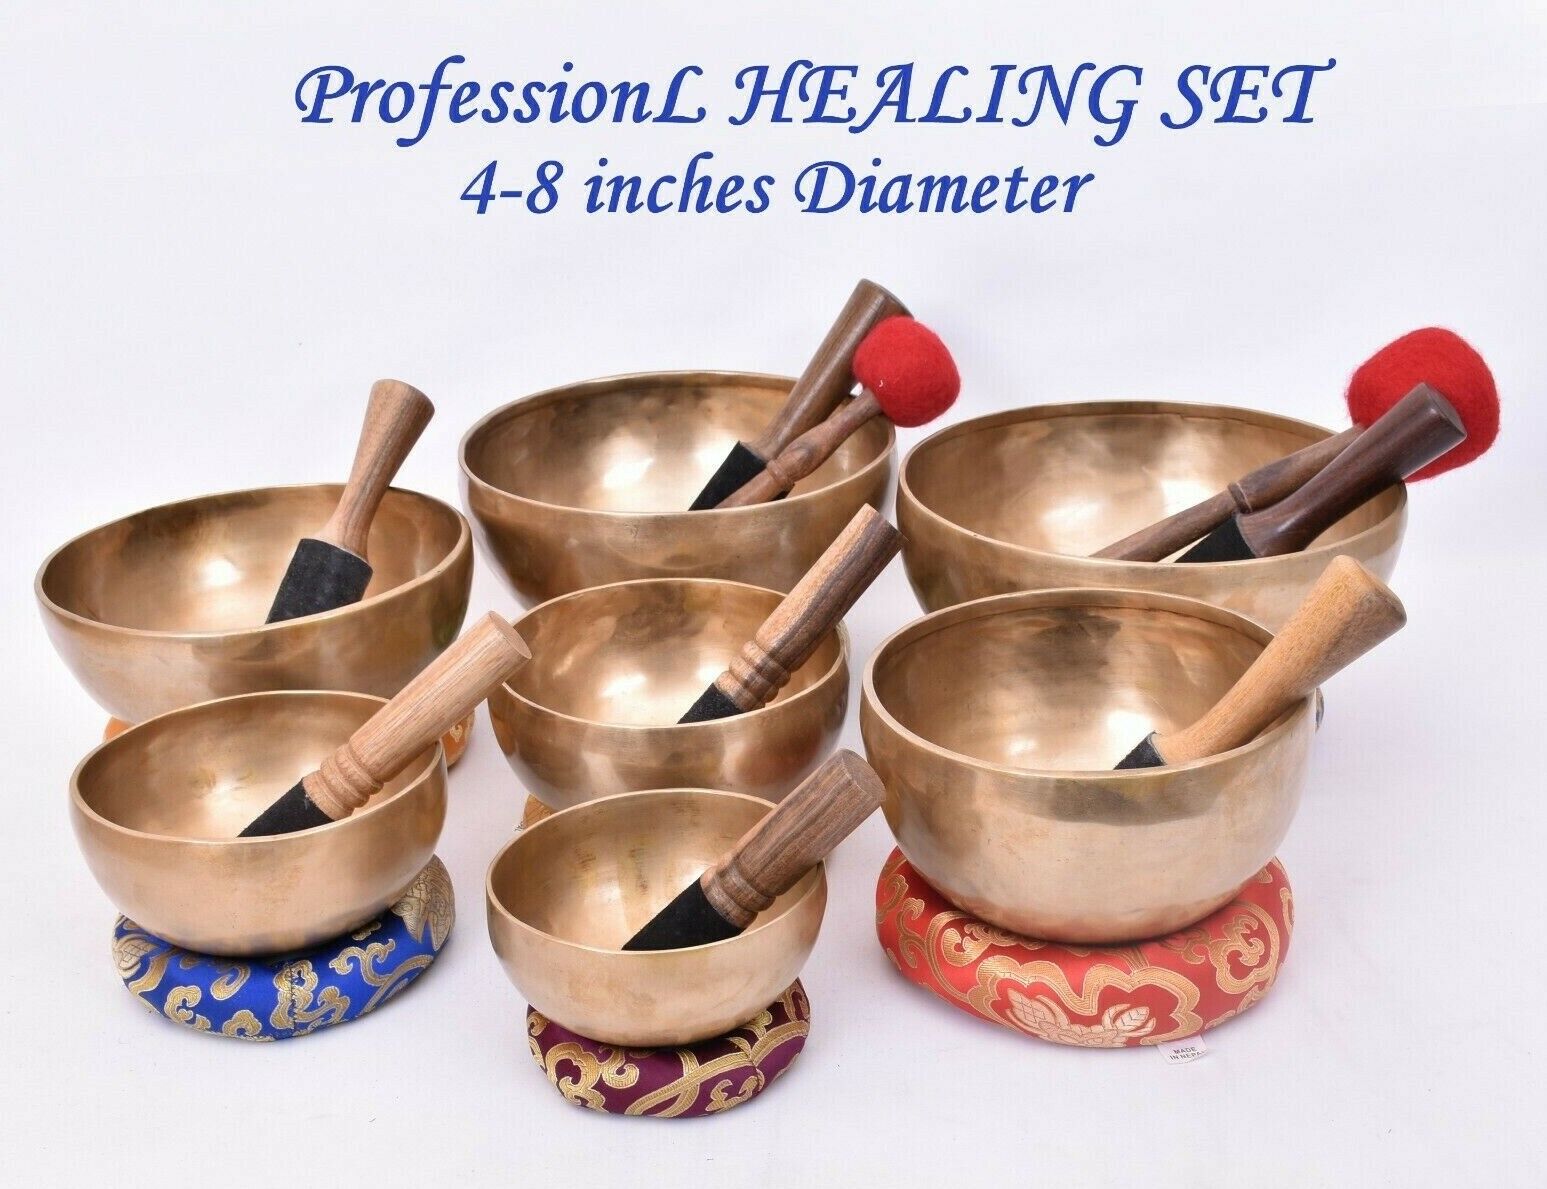 4-8 inches professional sound healing singing bowl set of 7-Tibetan singing bowl